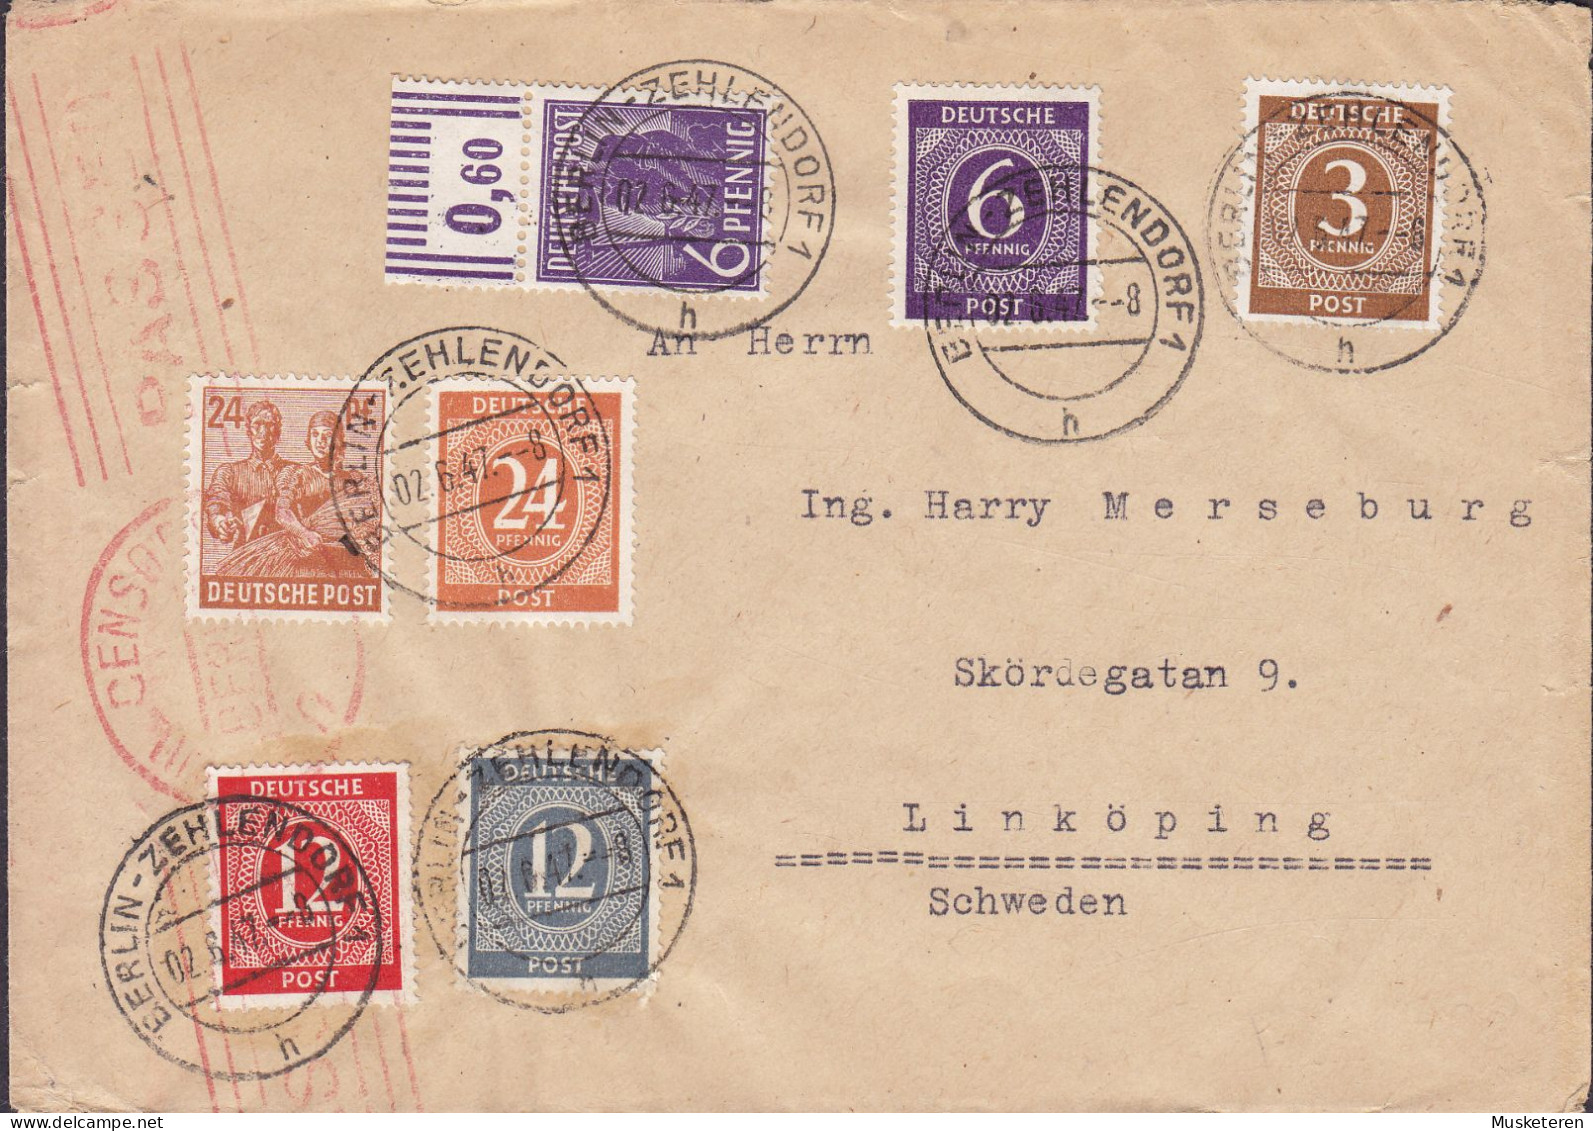 Alliierte Besetzung Amerikanische Zone BERLIN - ZEHLENDORF 1947 Cover Brief LINKÖPING Sweden (Red) CENSOR Cds. - Covers & Documents